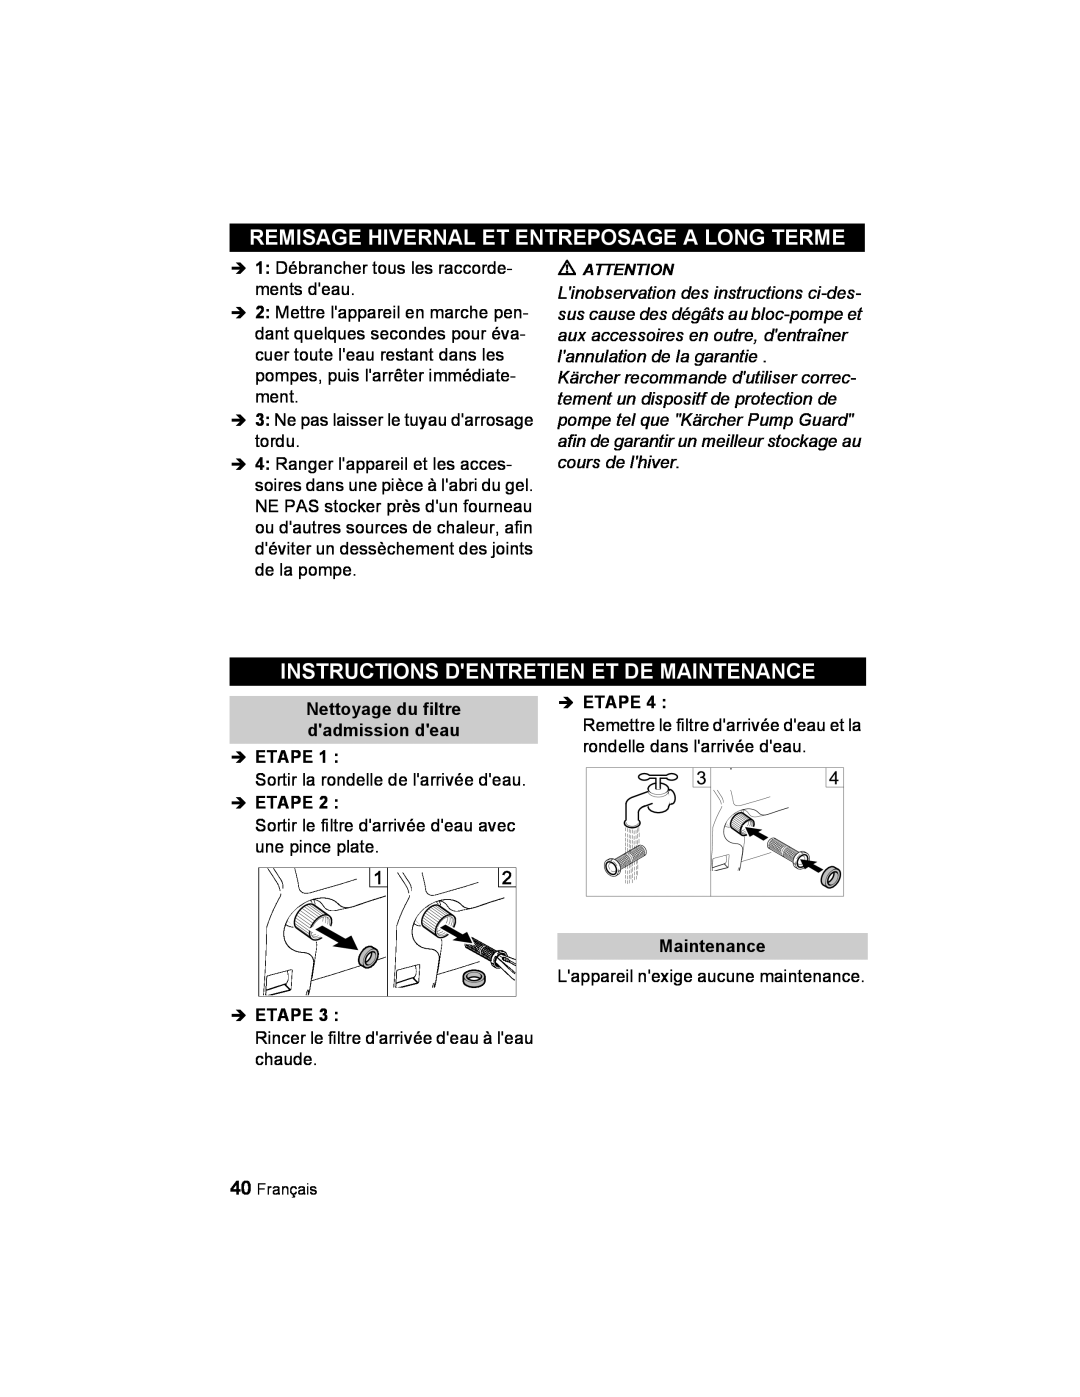 Karcher K 2.21 manual Remisage Hivernal Et Entreposage A Long Terme, Instructions Dentretien Et De Maintenance, Î Etape 